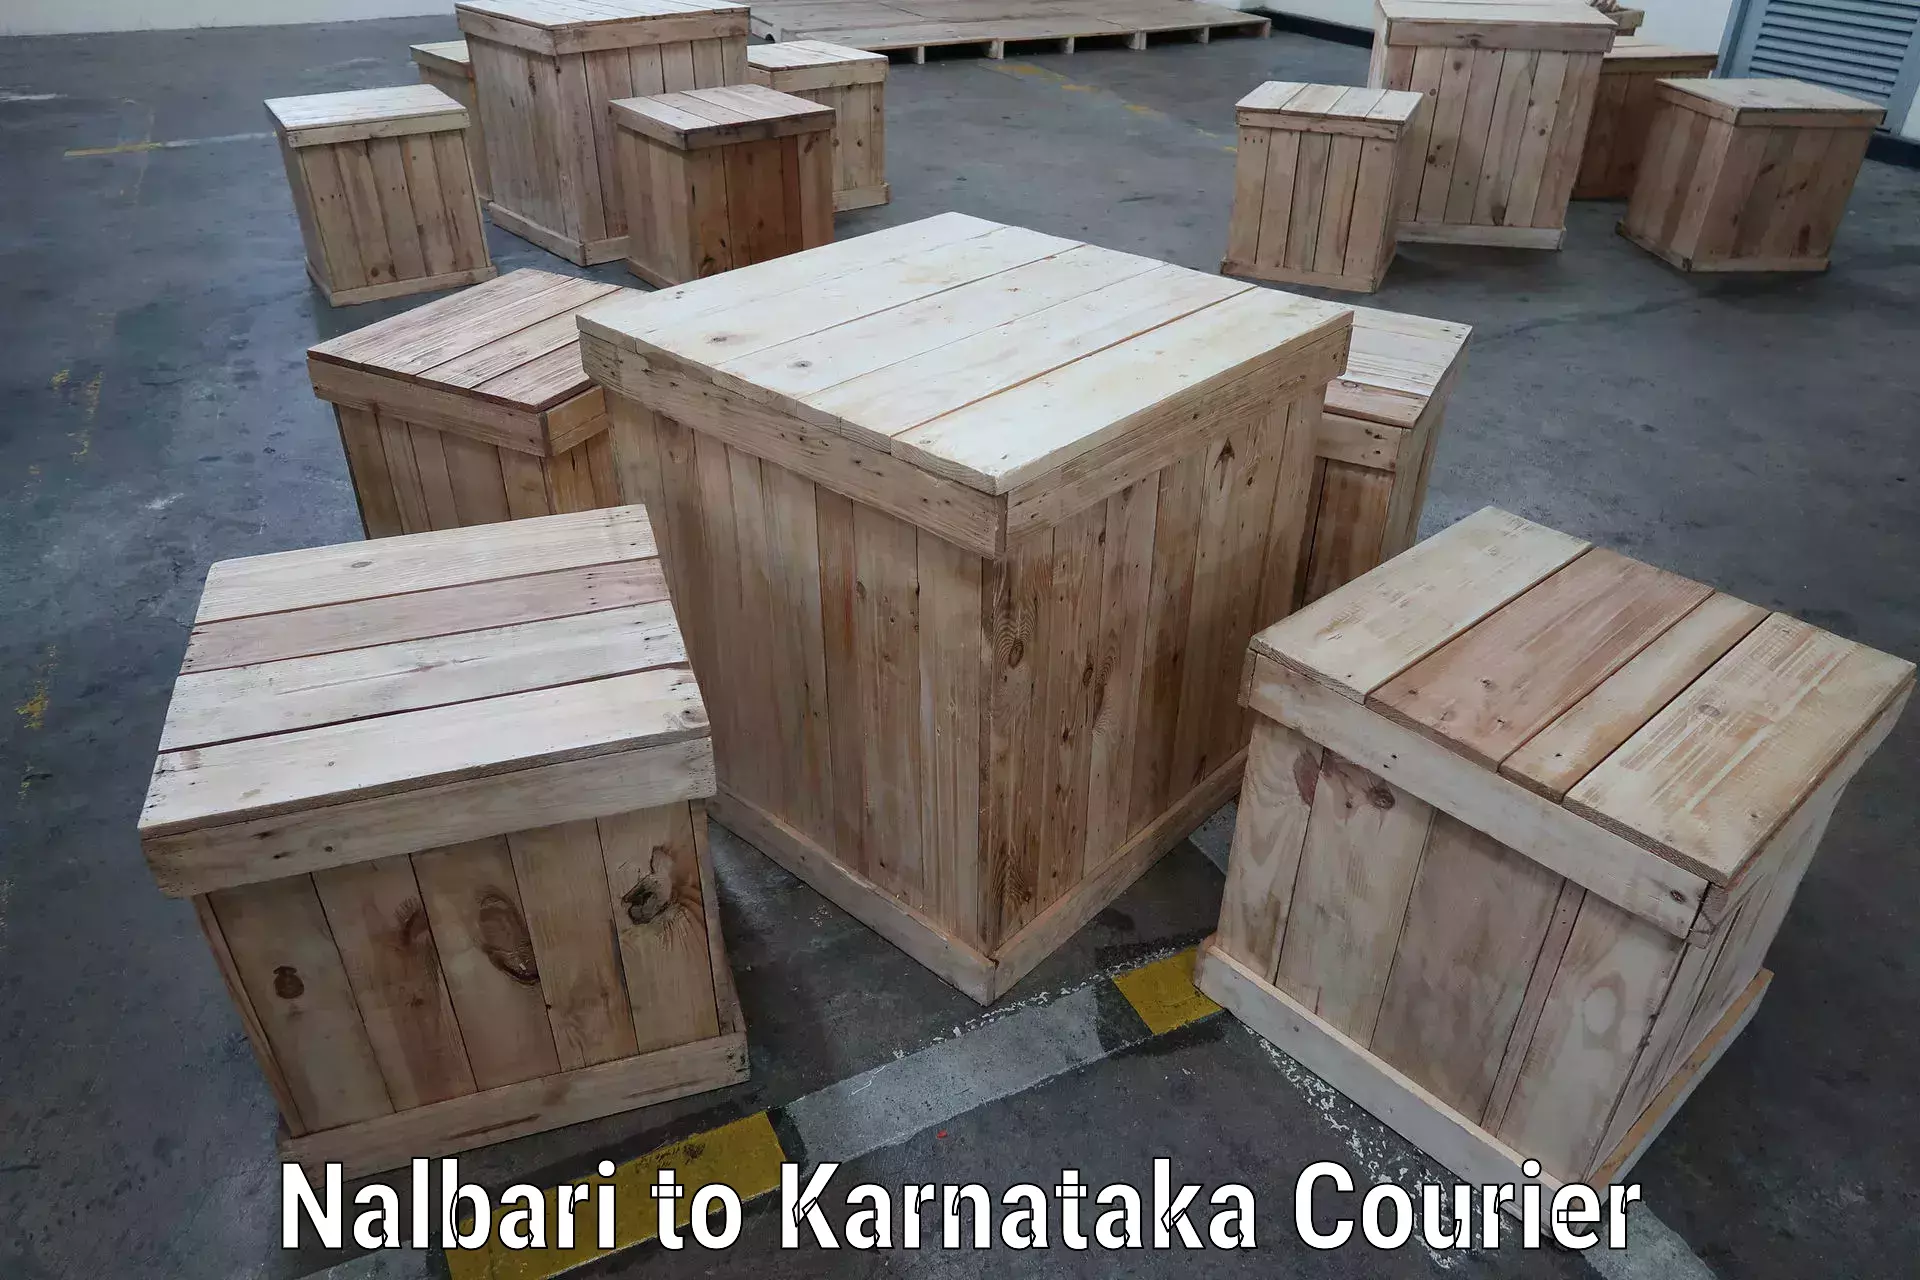 Expedited shipping solutions Nalbari to Karnataka